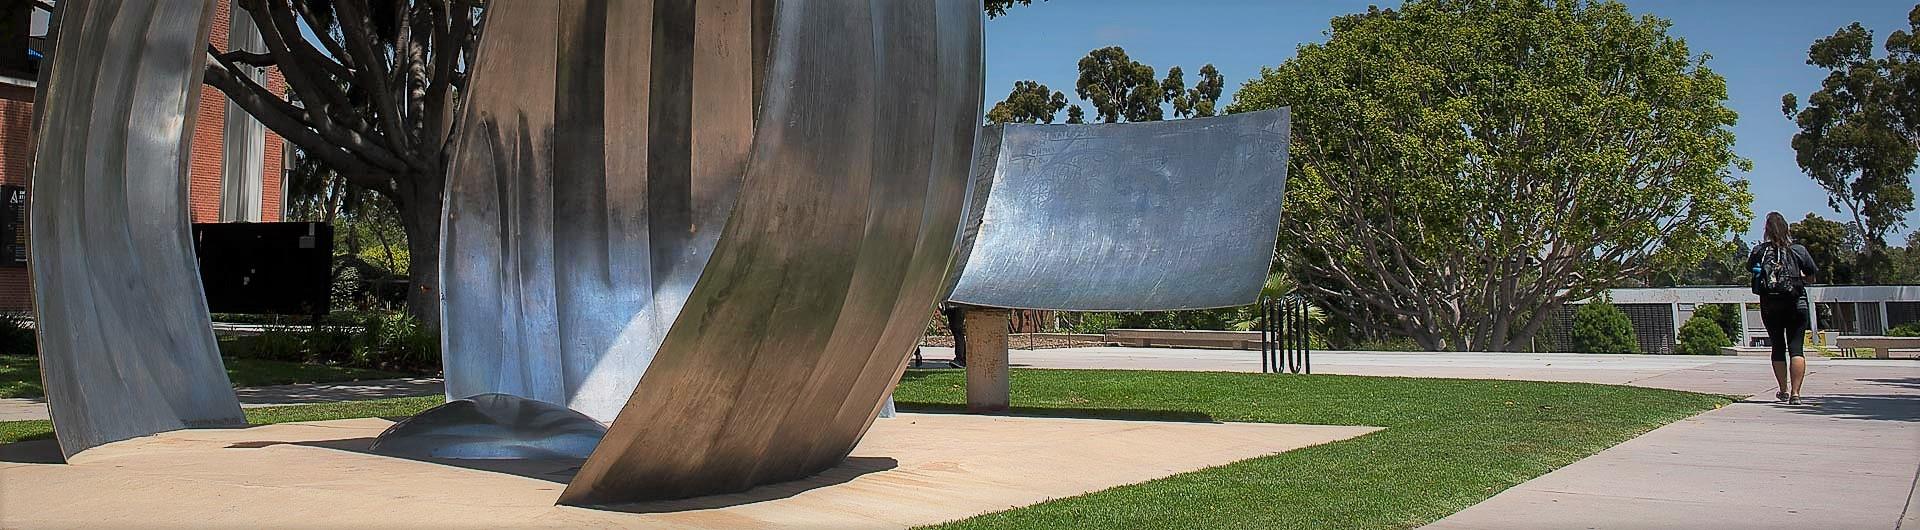 Cal State Long Beach Whale Sculpture